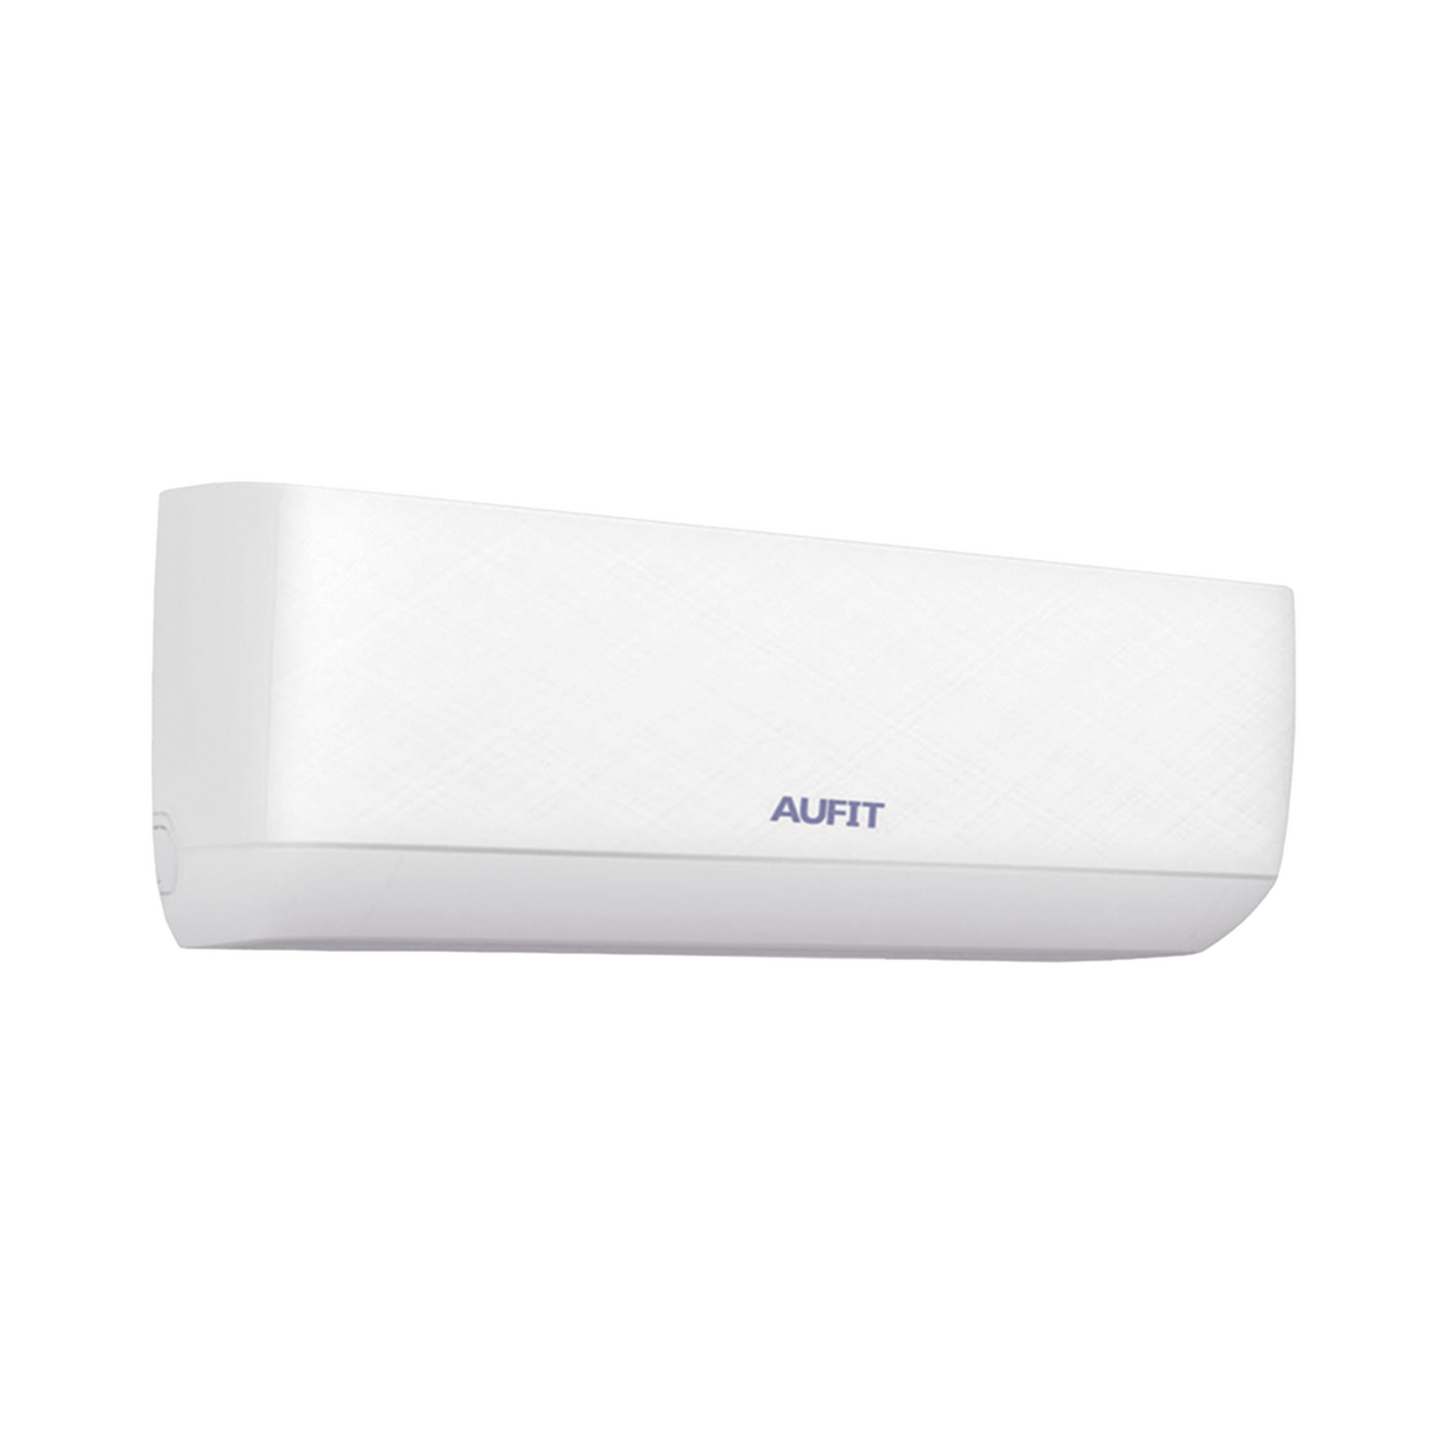 Minisplit WiFi Inverter / SEER 20 / 12,000 BTUs ( 1 TON ) / R32 / Frio / 110 Vca / Filtro de Salud / Compatible con Alexa y Google Home.